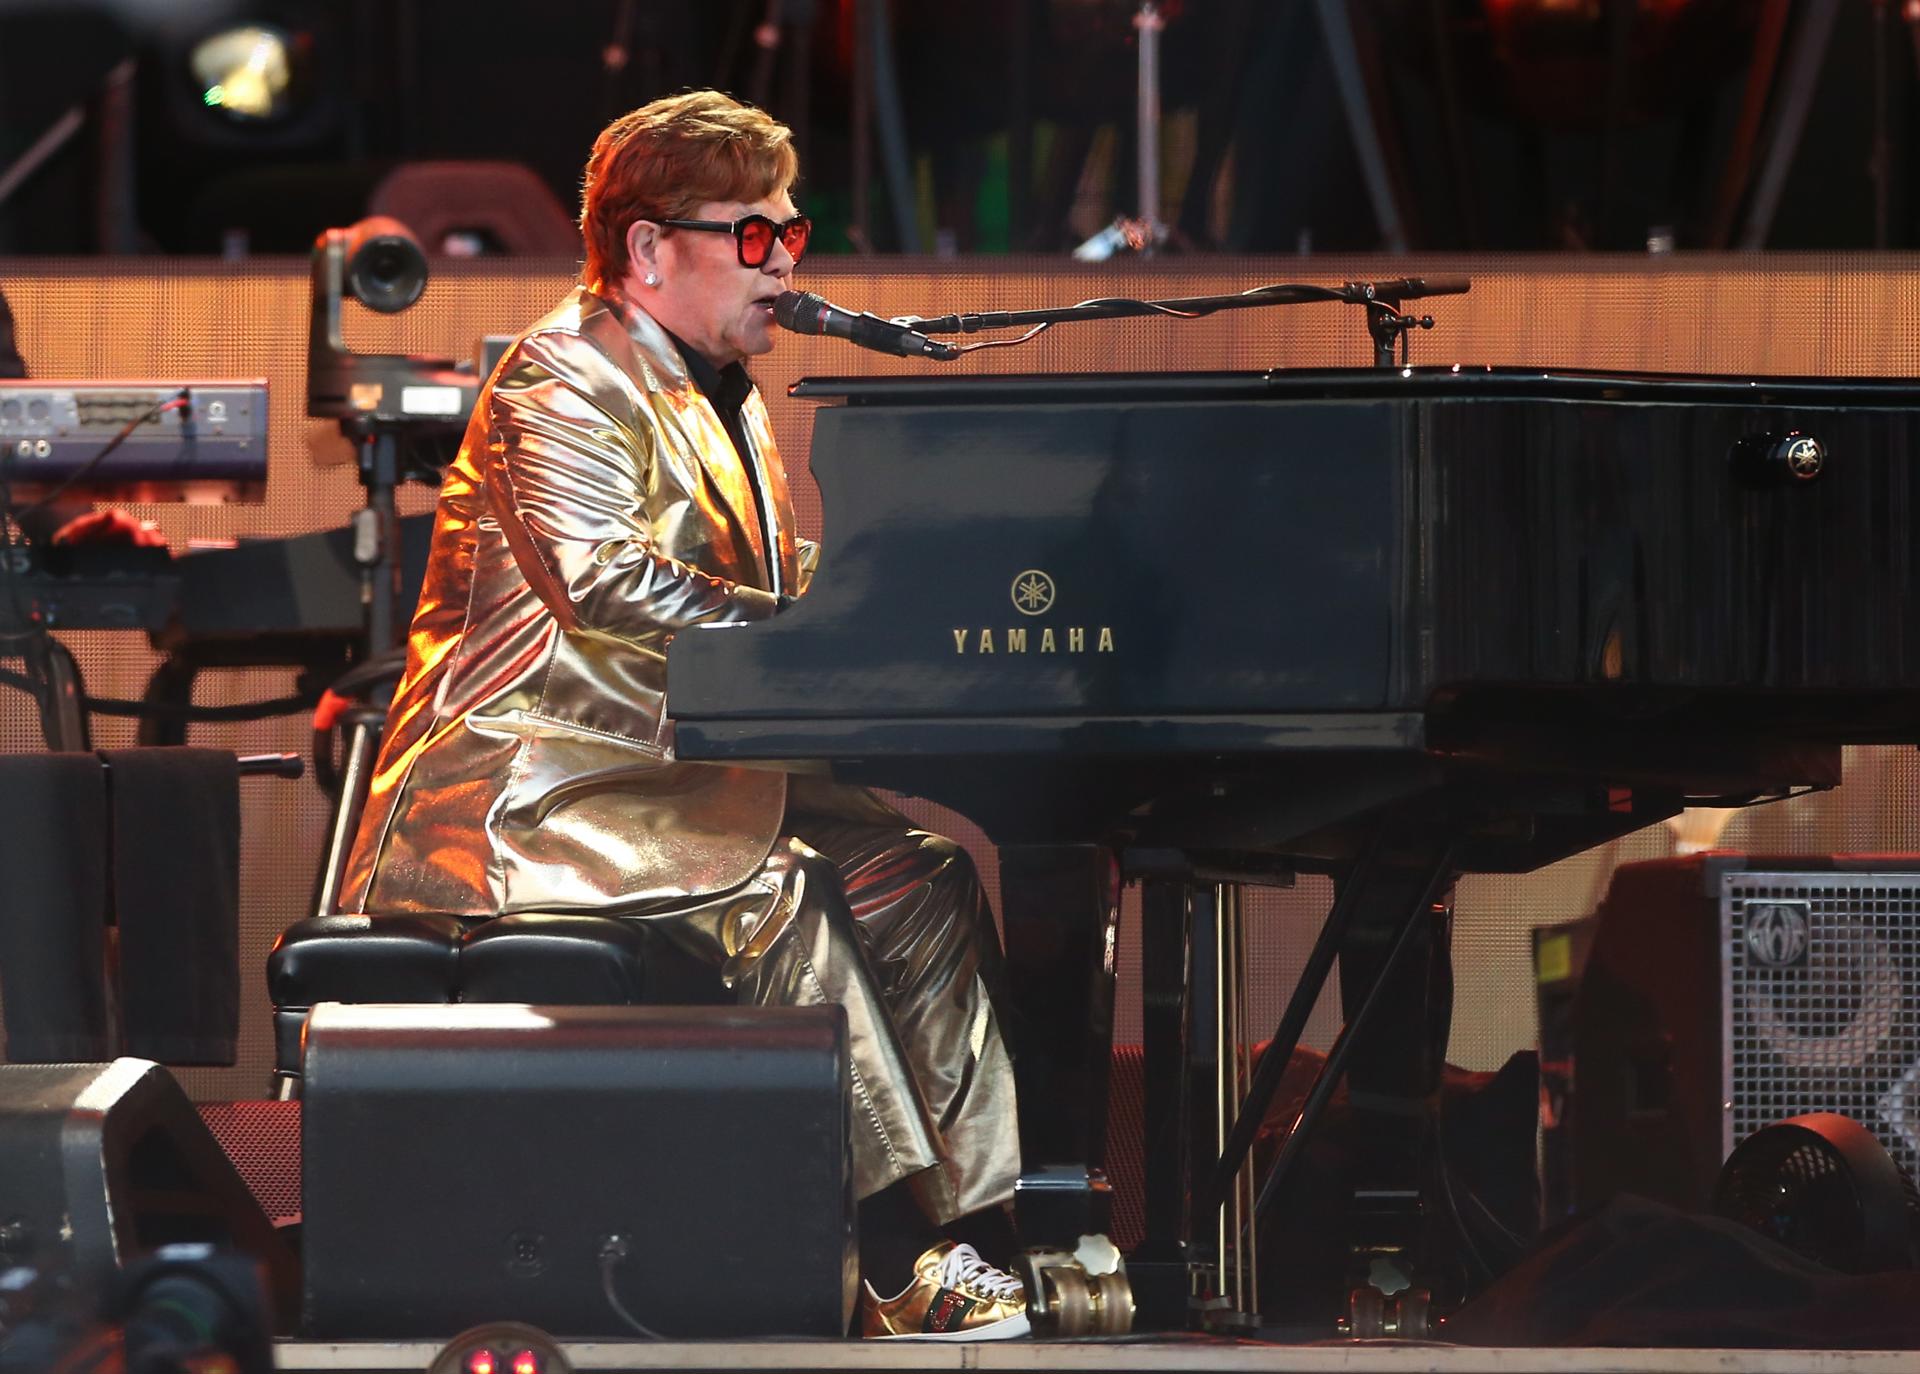 El cantante Elton John se despide de los escenarios tras "52 años de pura alegría tocando música"